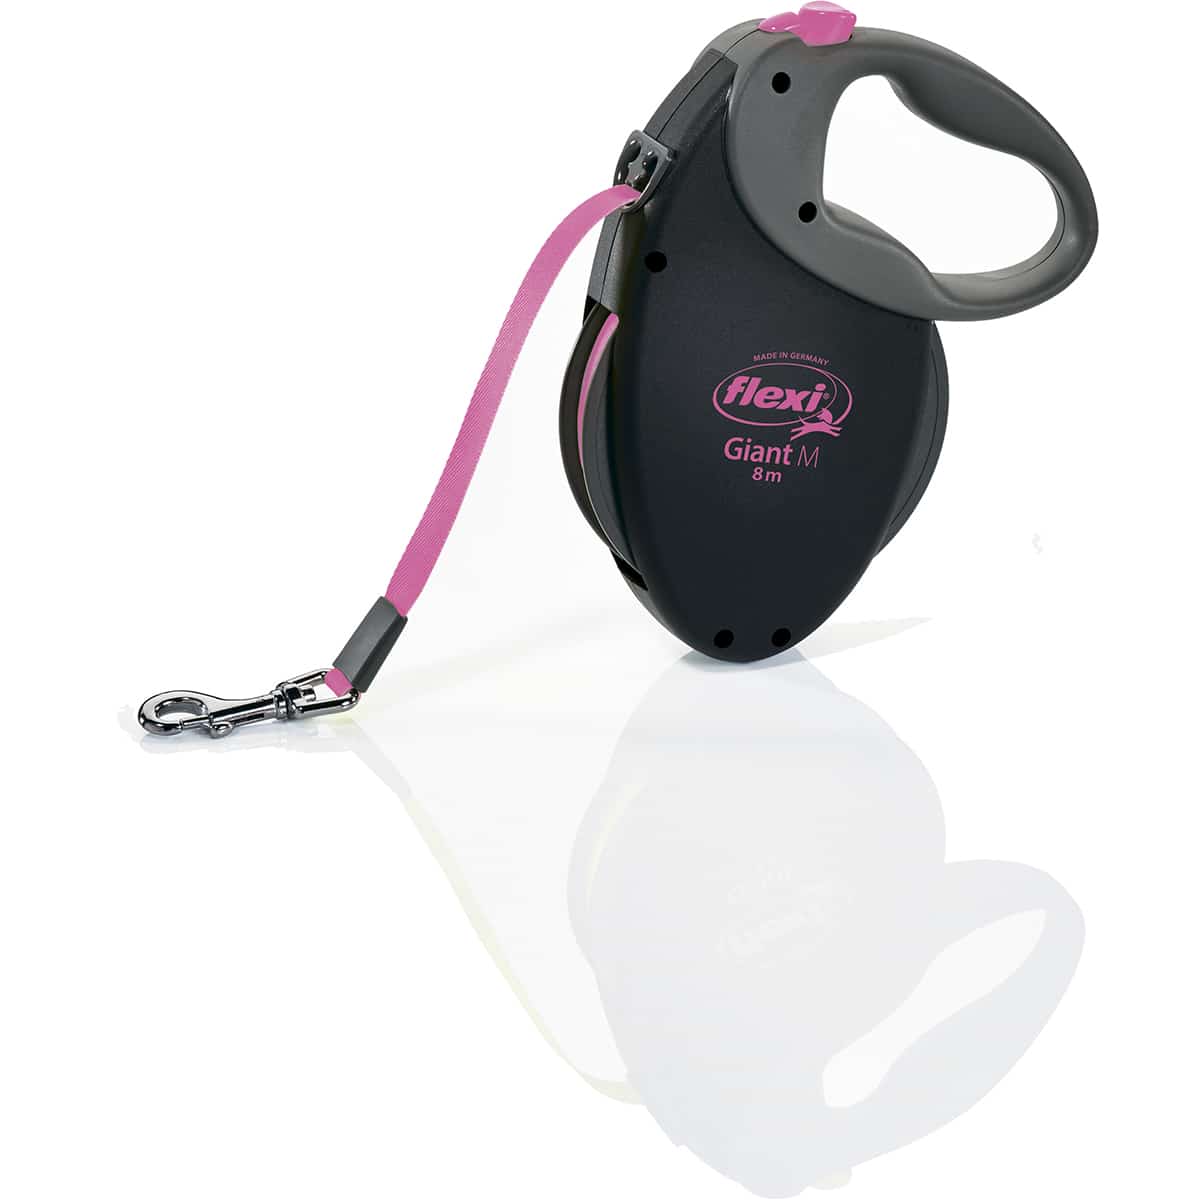 Рулетка-ремень FLEXI Neon GIANT M для собак средних и крупных пород (Вес до 25кг, длина 8м, черно-розовая)